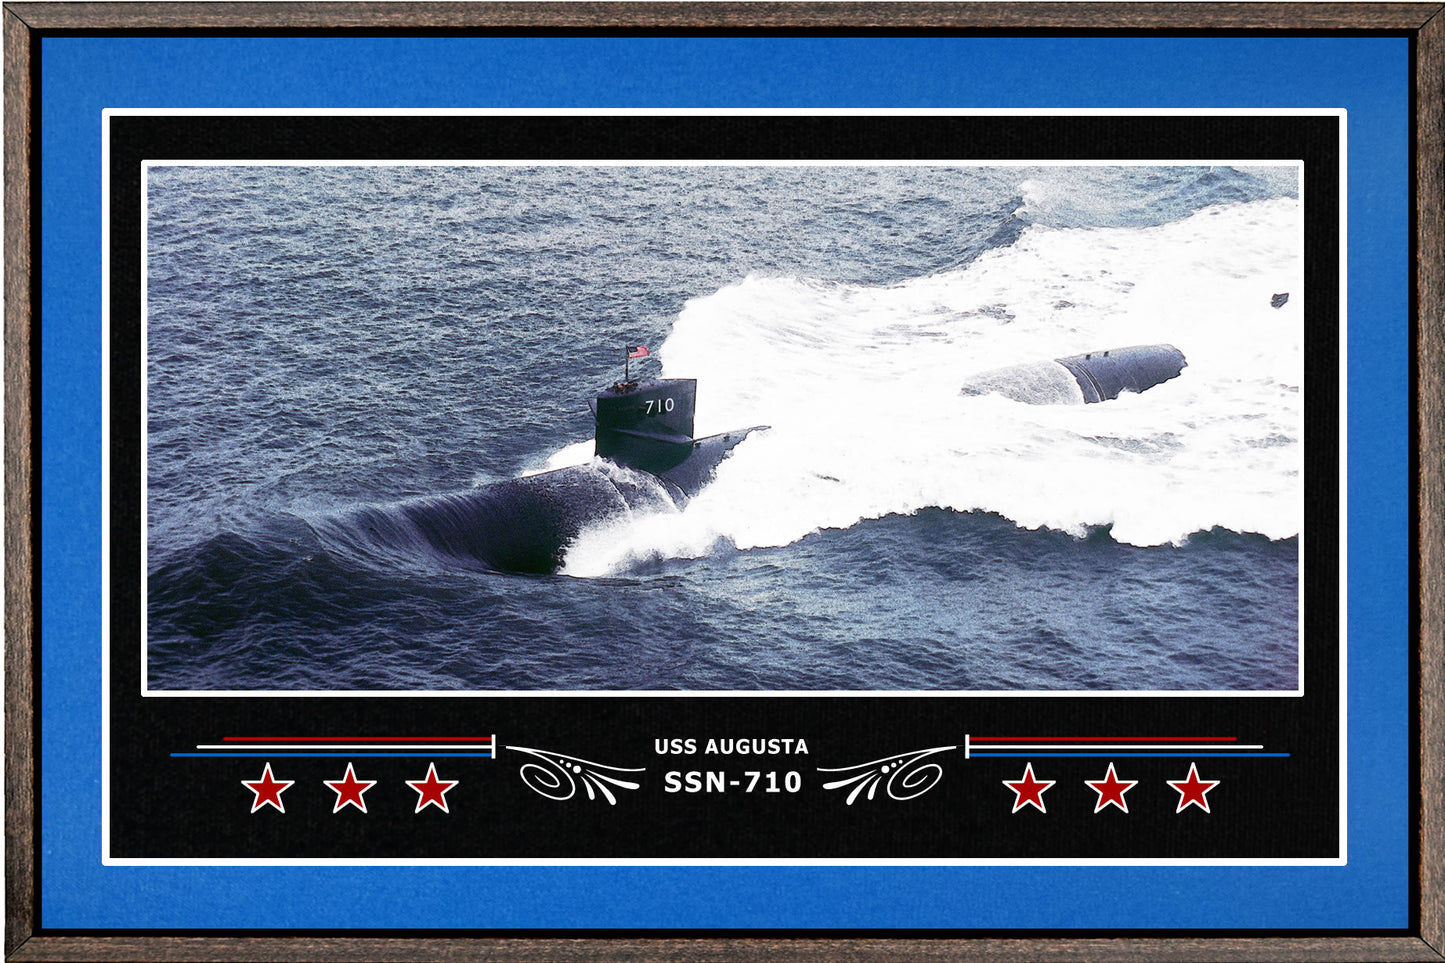 USS AUGUSTA SSN 710 BOX FRAMED CANVAS ART BLUE